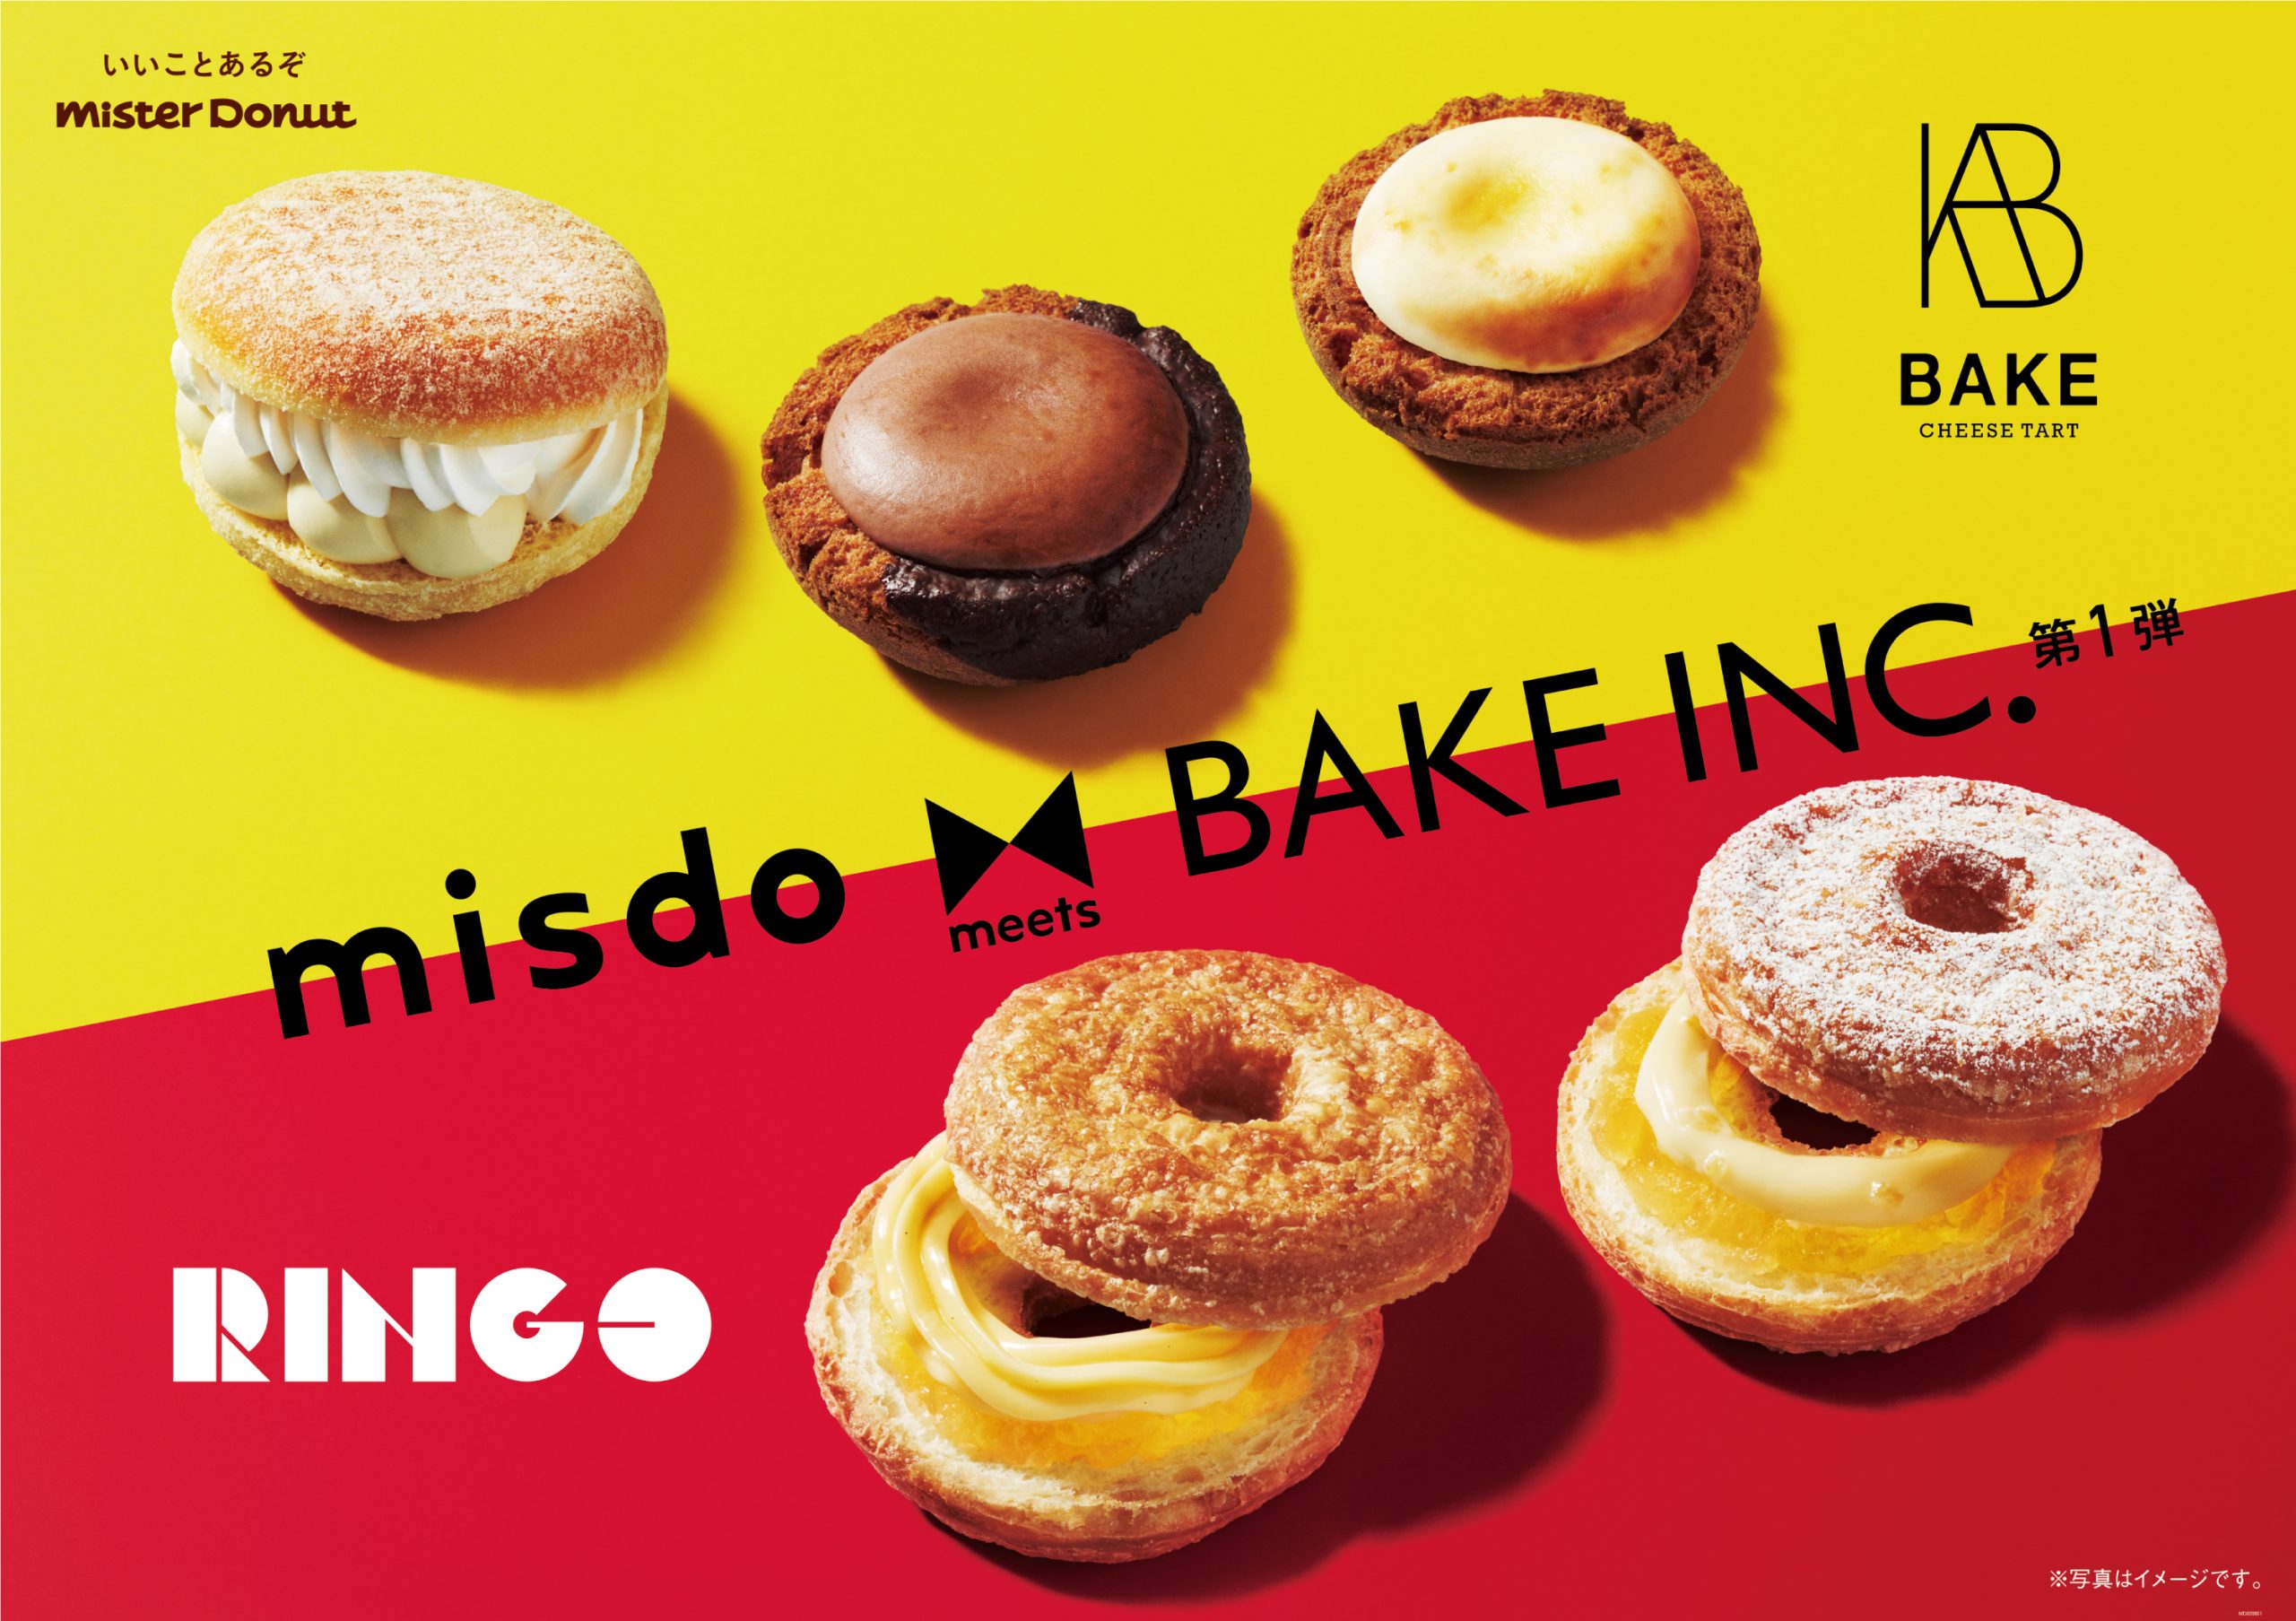 今年の夏も「misdo meets BAKE INC.」が実現！ミスタードーナツに学ぶ、50年以上愛され続ける秘訣とは